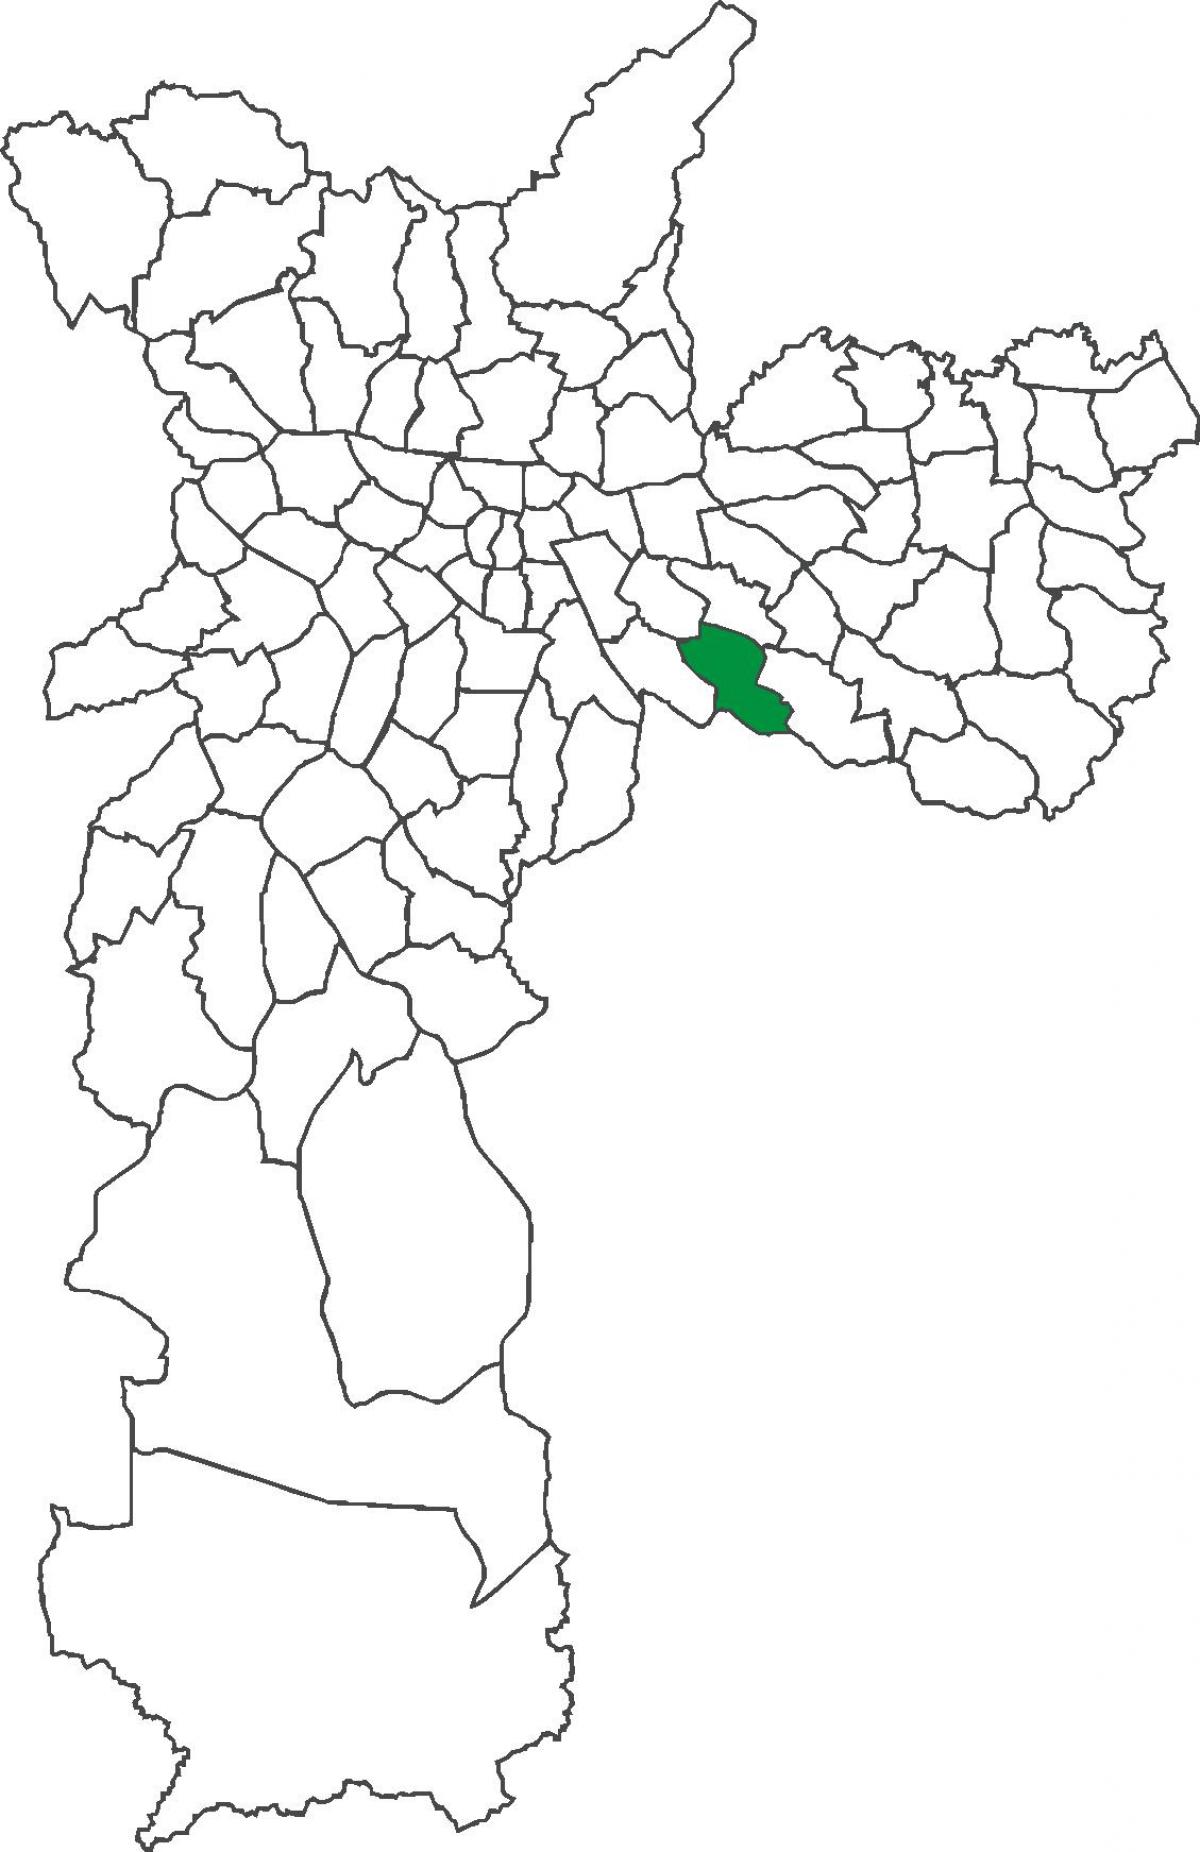 地図のサンルーカス地区